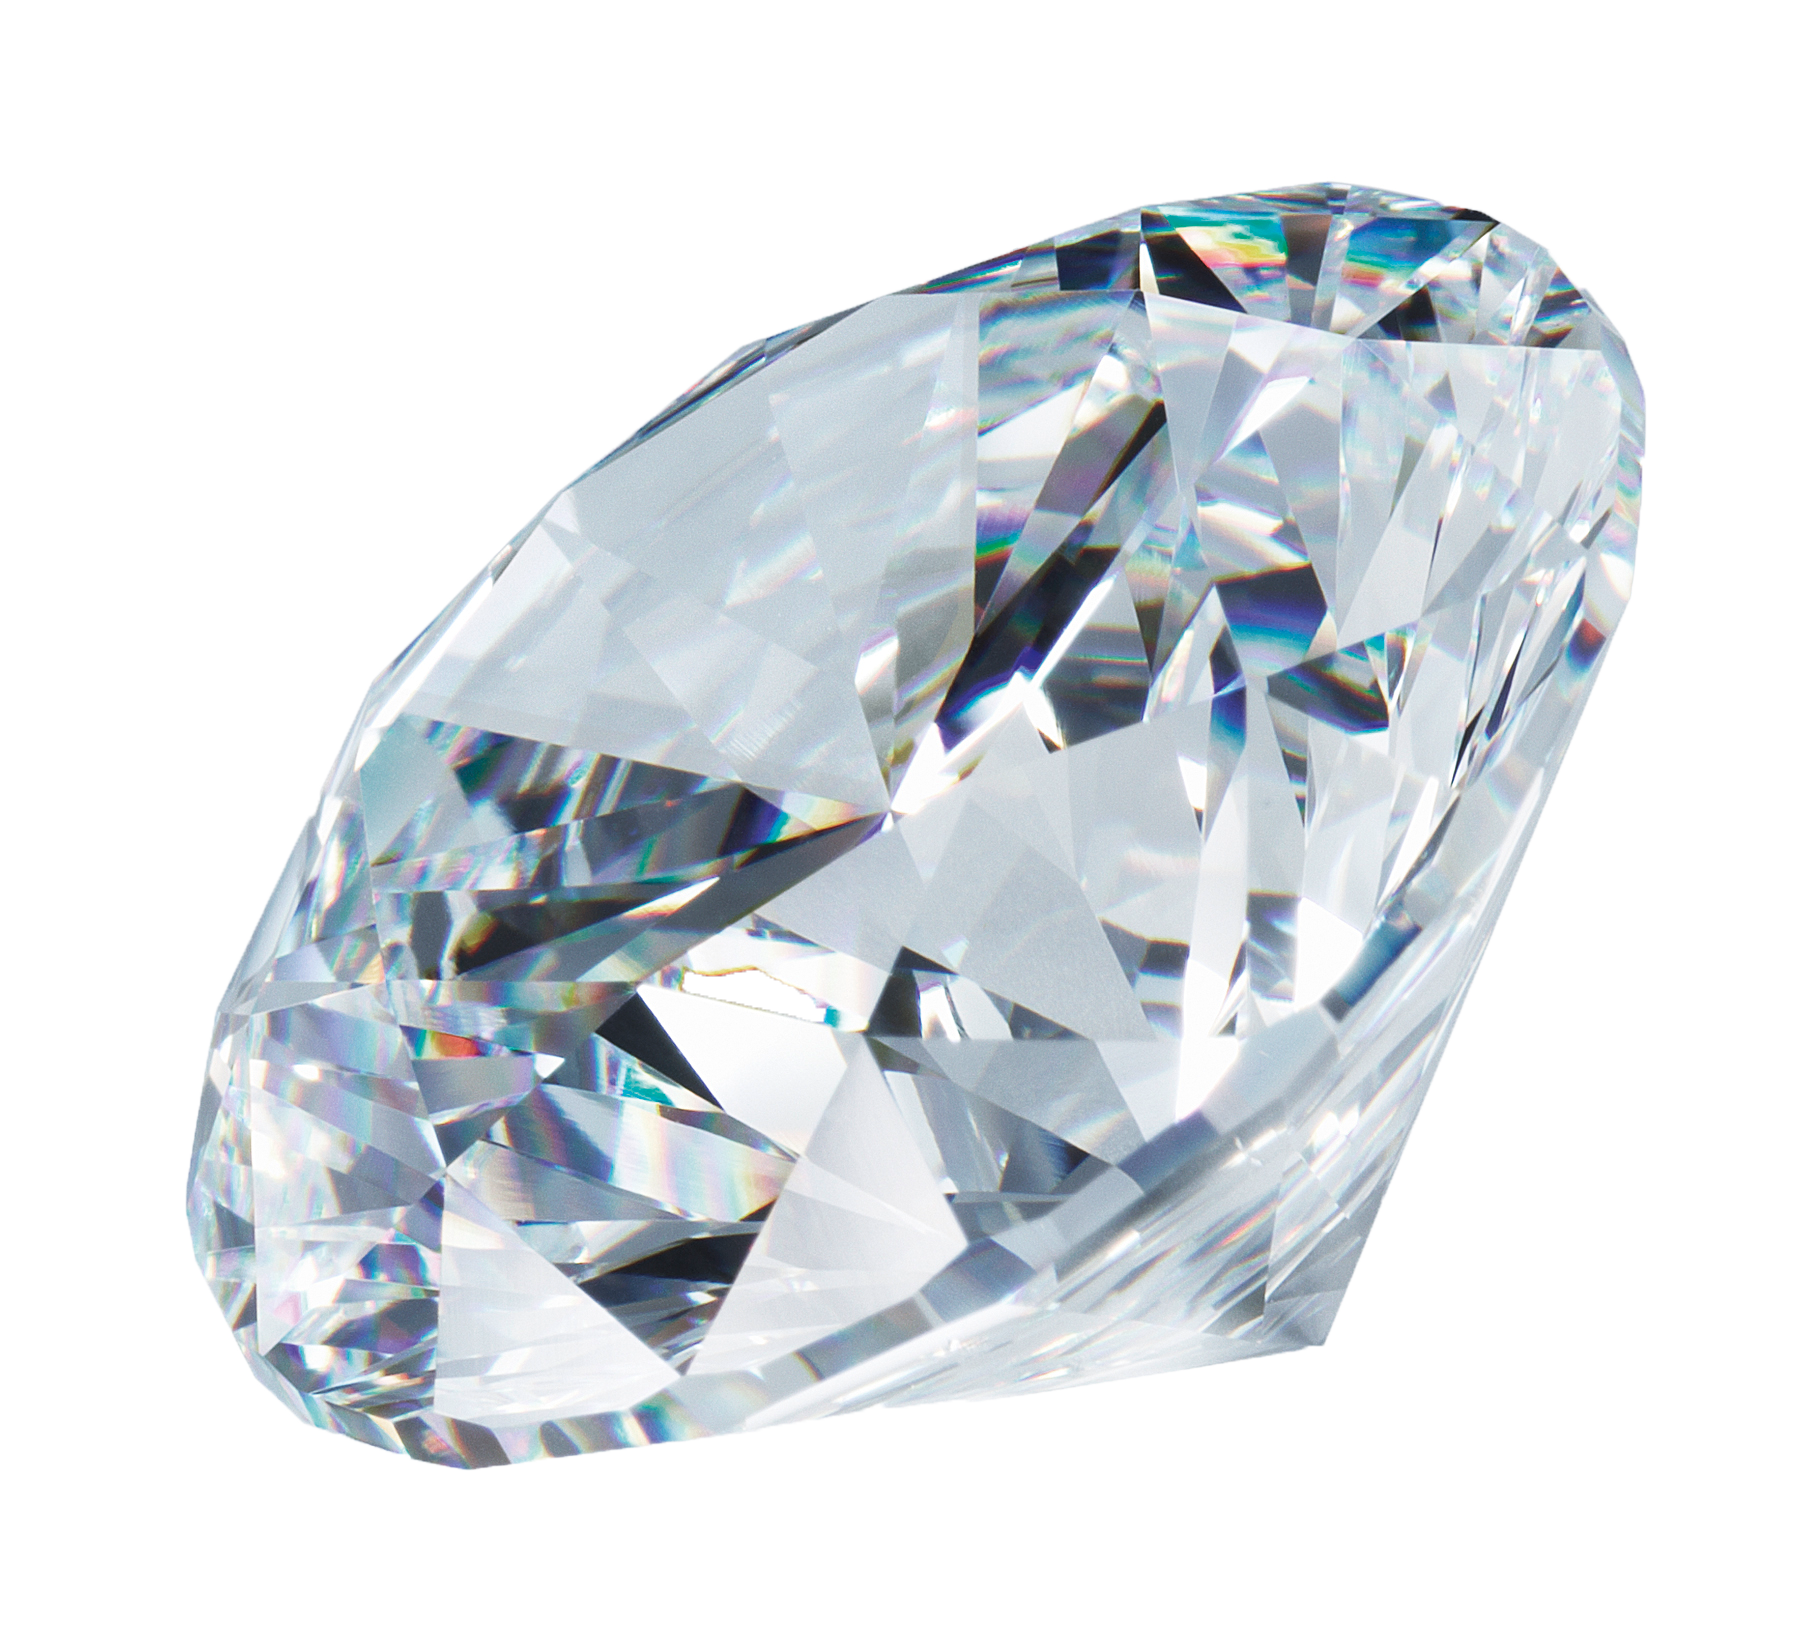 Đá quý, kim cương